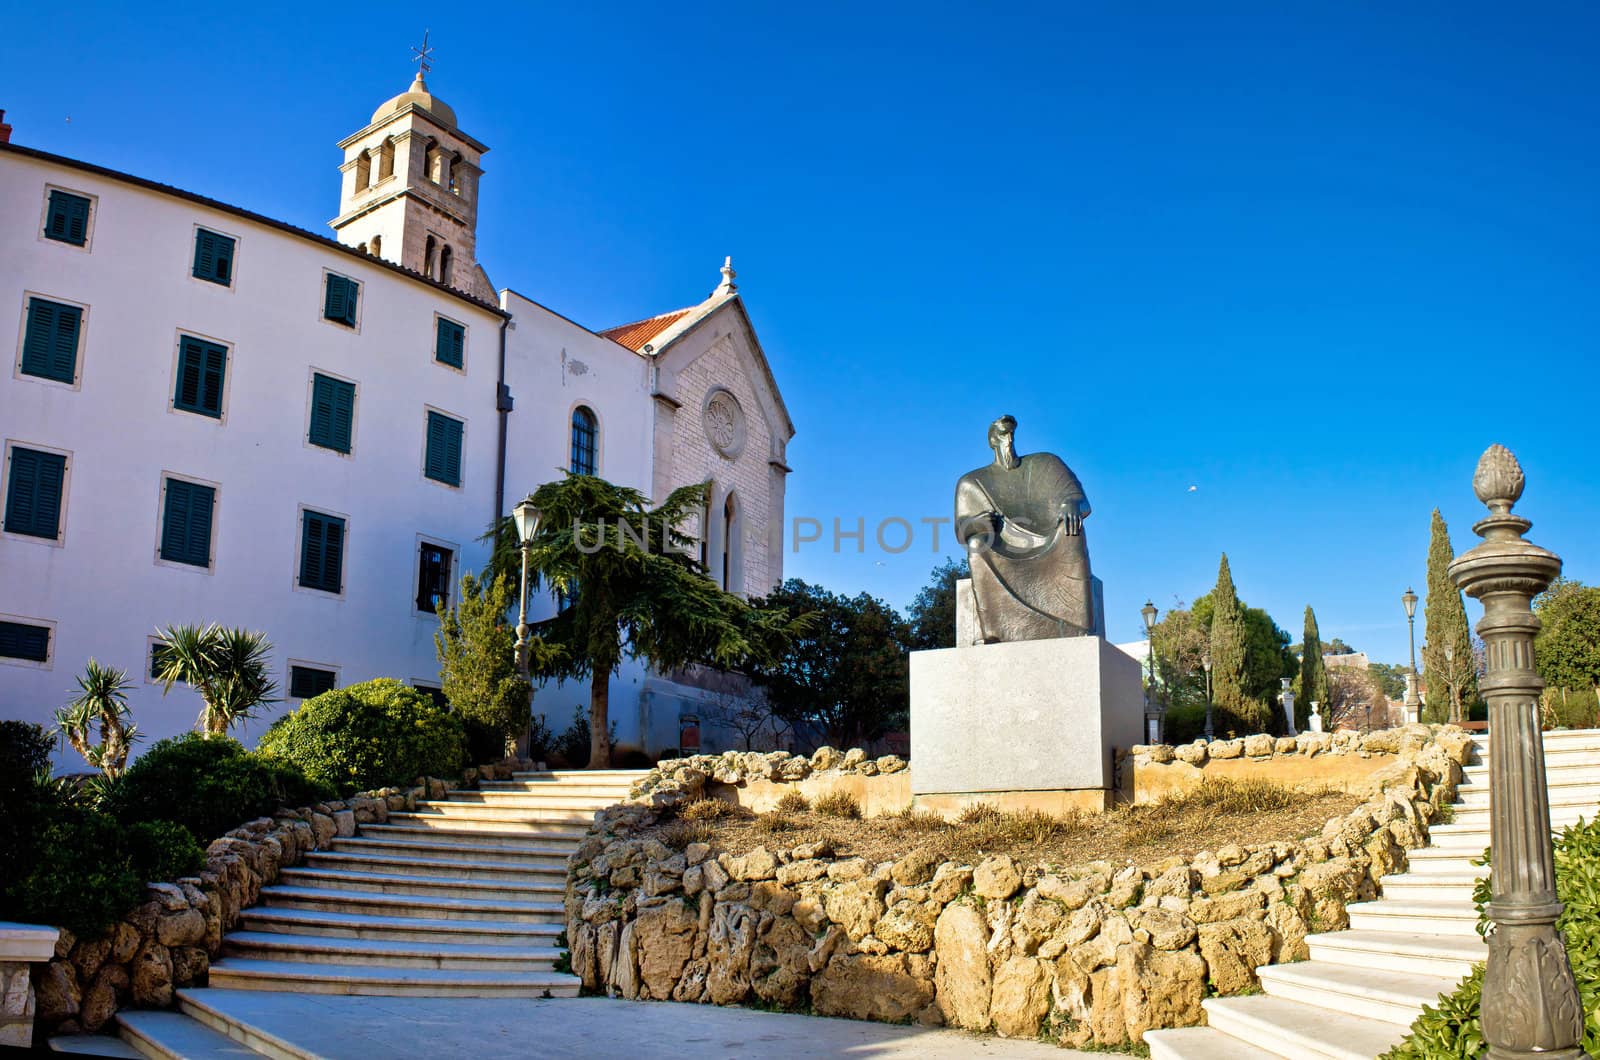 Town of Sibenik park and church, Dalmatia, Croatia